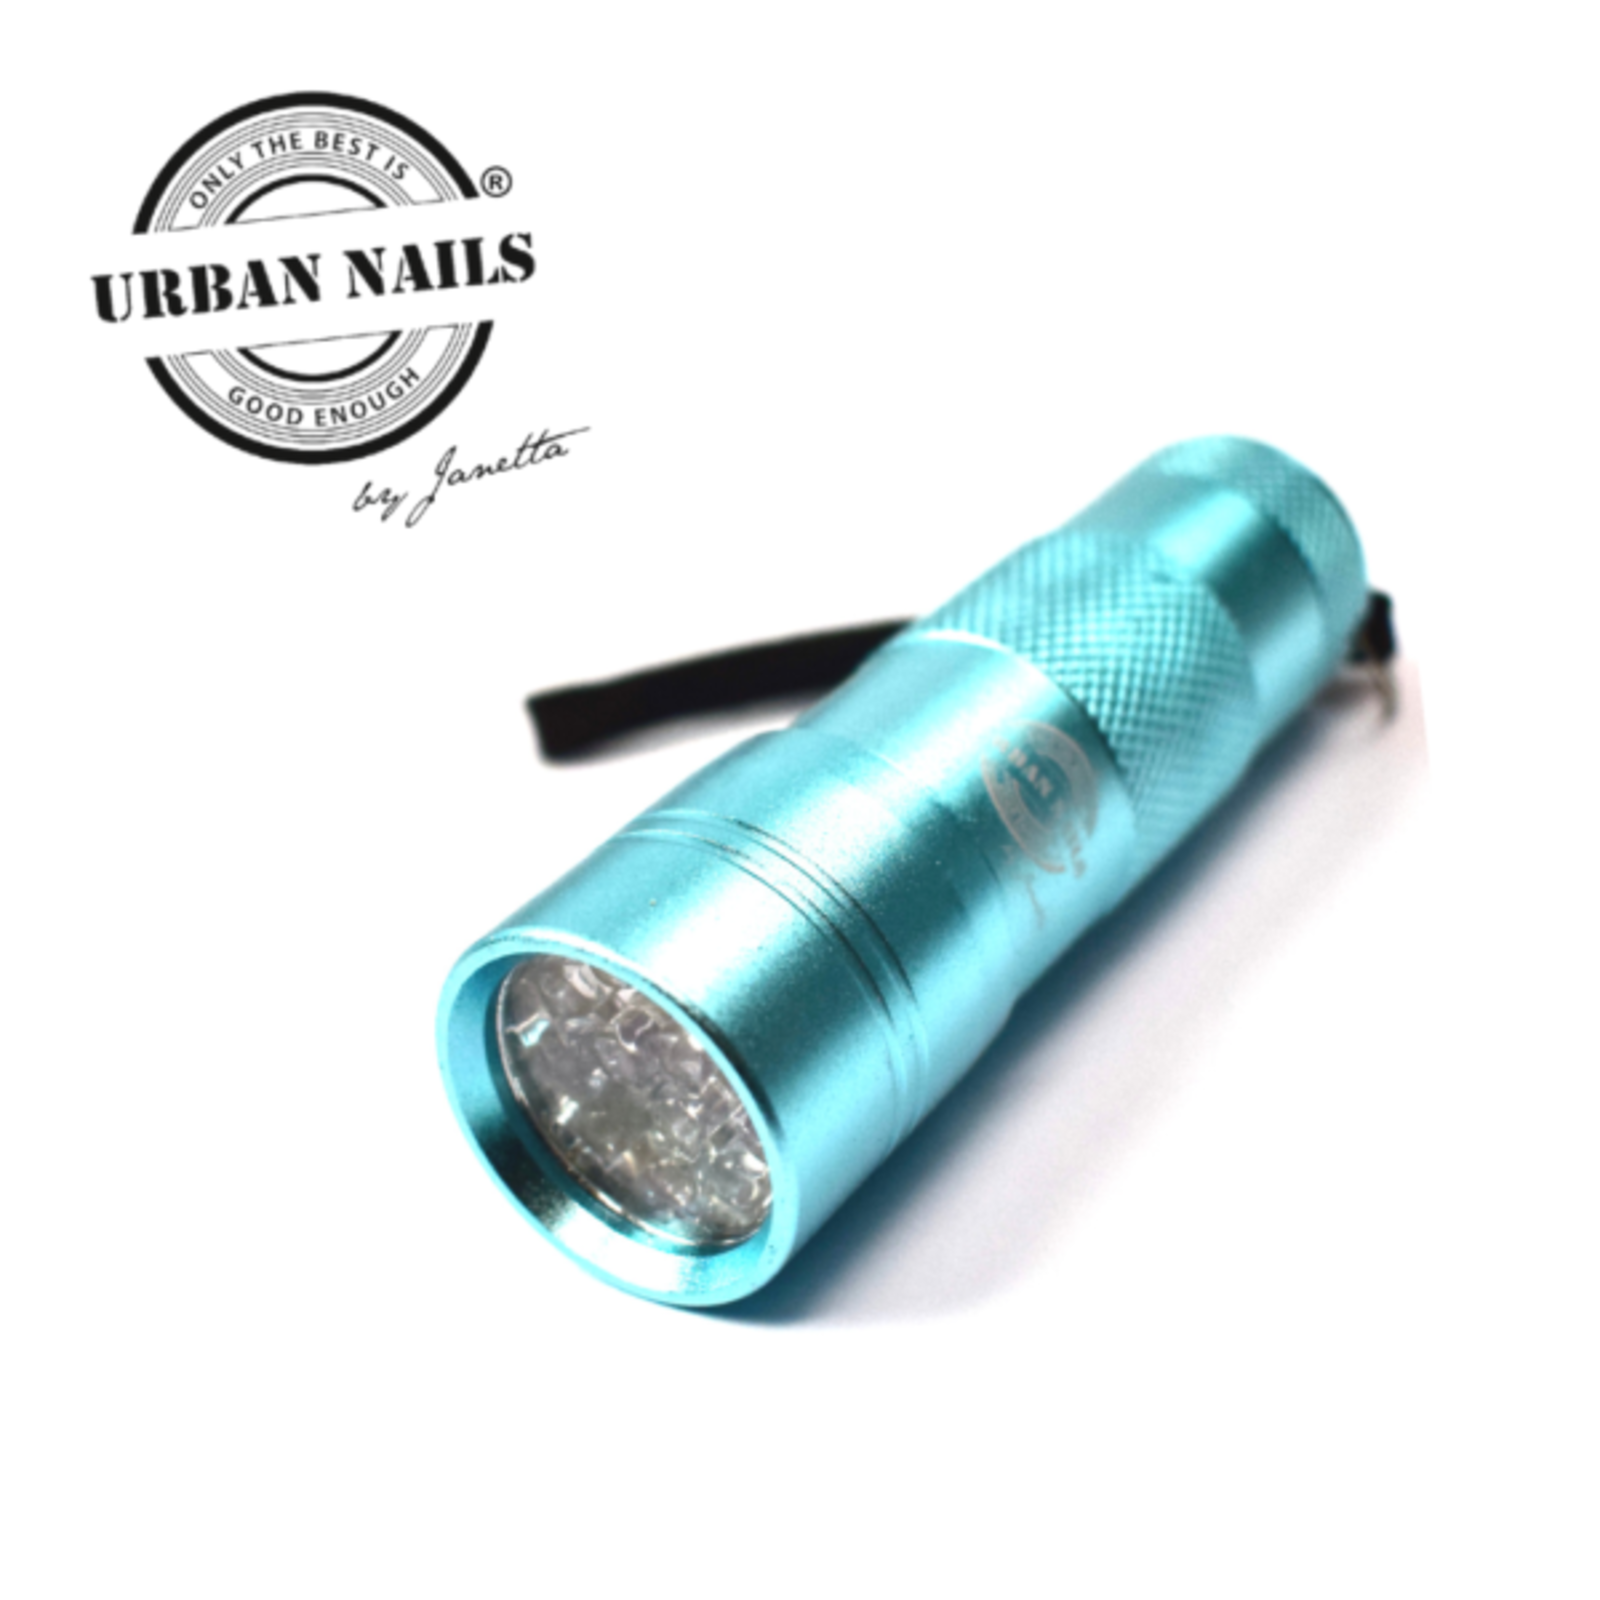 Urban nails Flashlight uv - led black / mini uv lampje blue